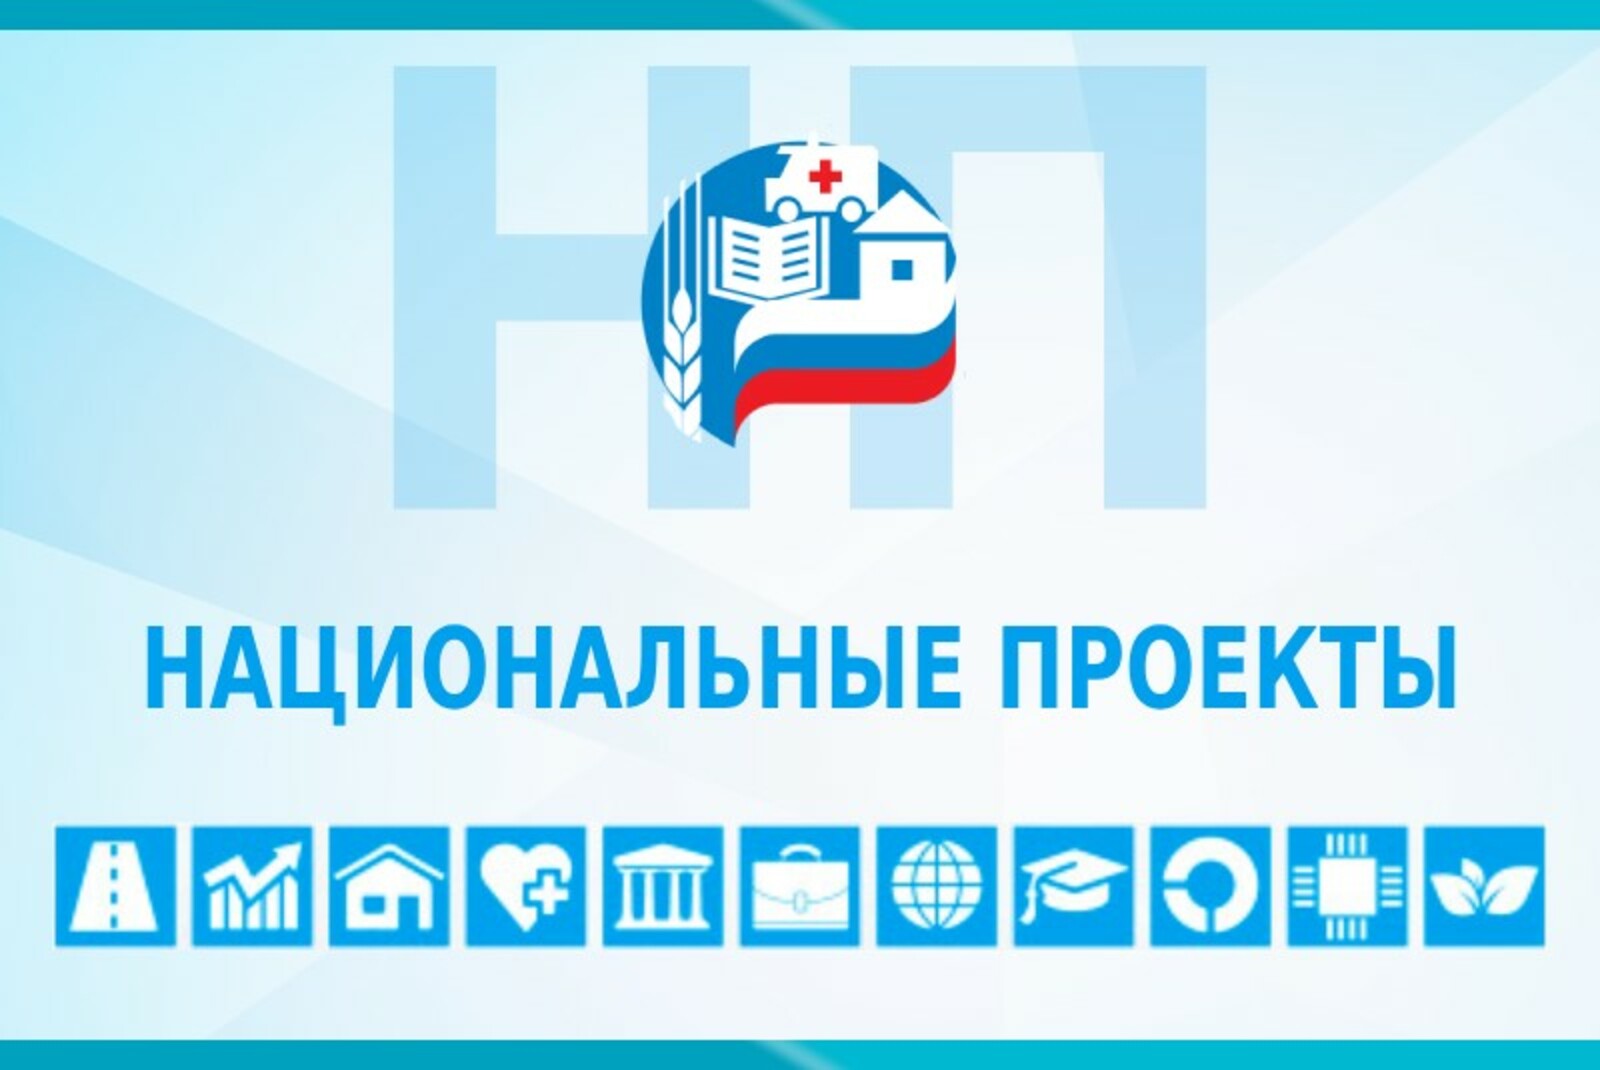 Башкортостан занял 3 место среди регионов России по уровню развития рынка газомоторного топлива